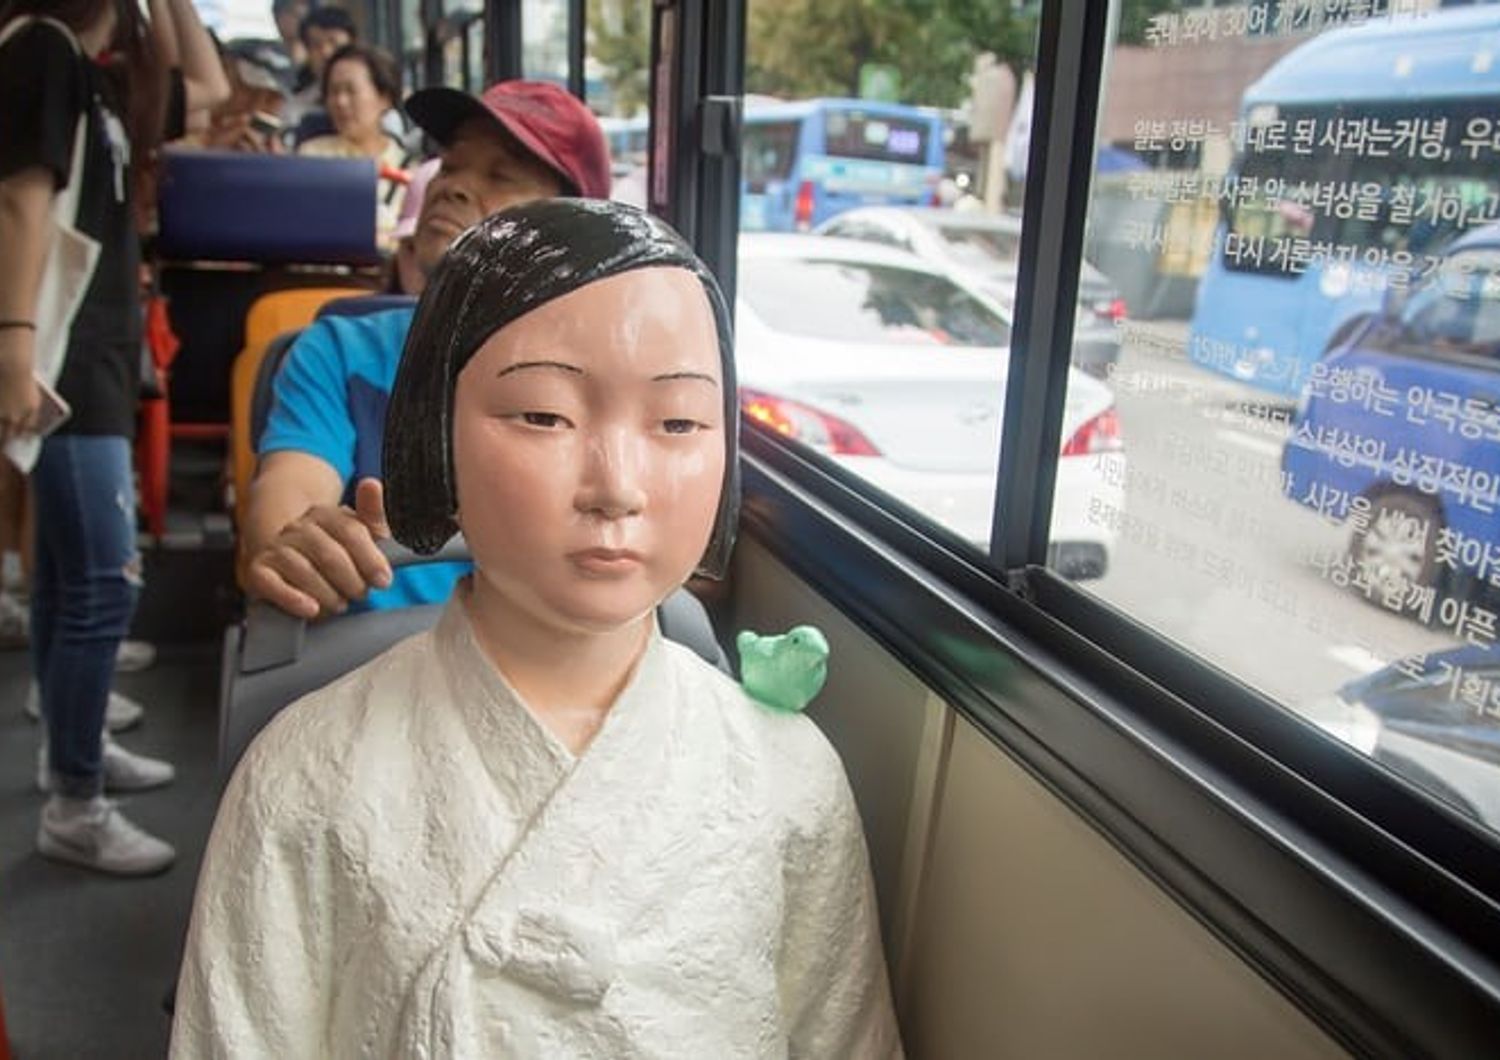 Statua di una &lsquo;donna di conforto&rsquo; su un autobus al centro di Seul